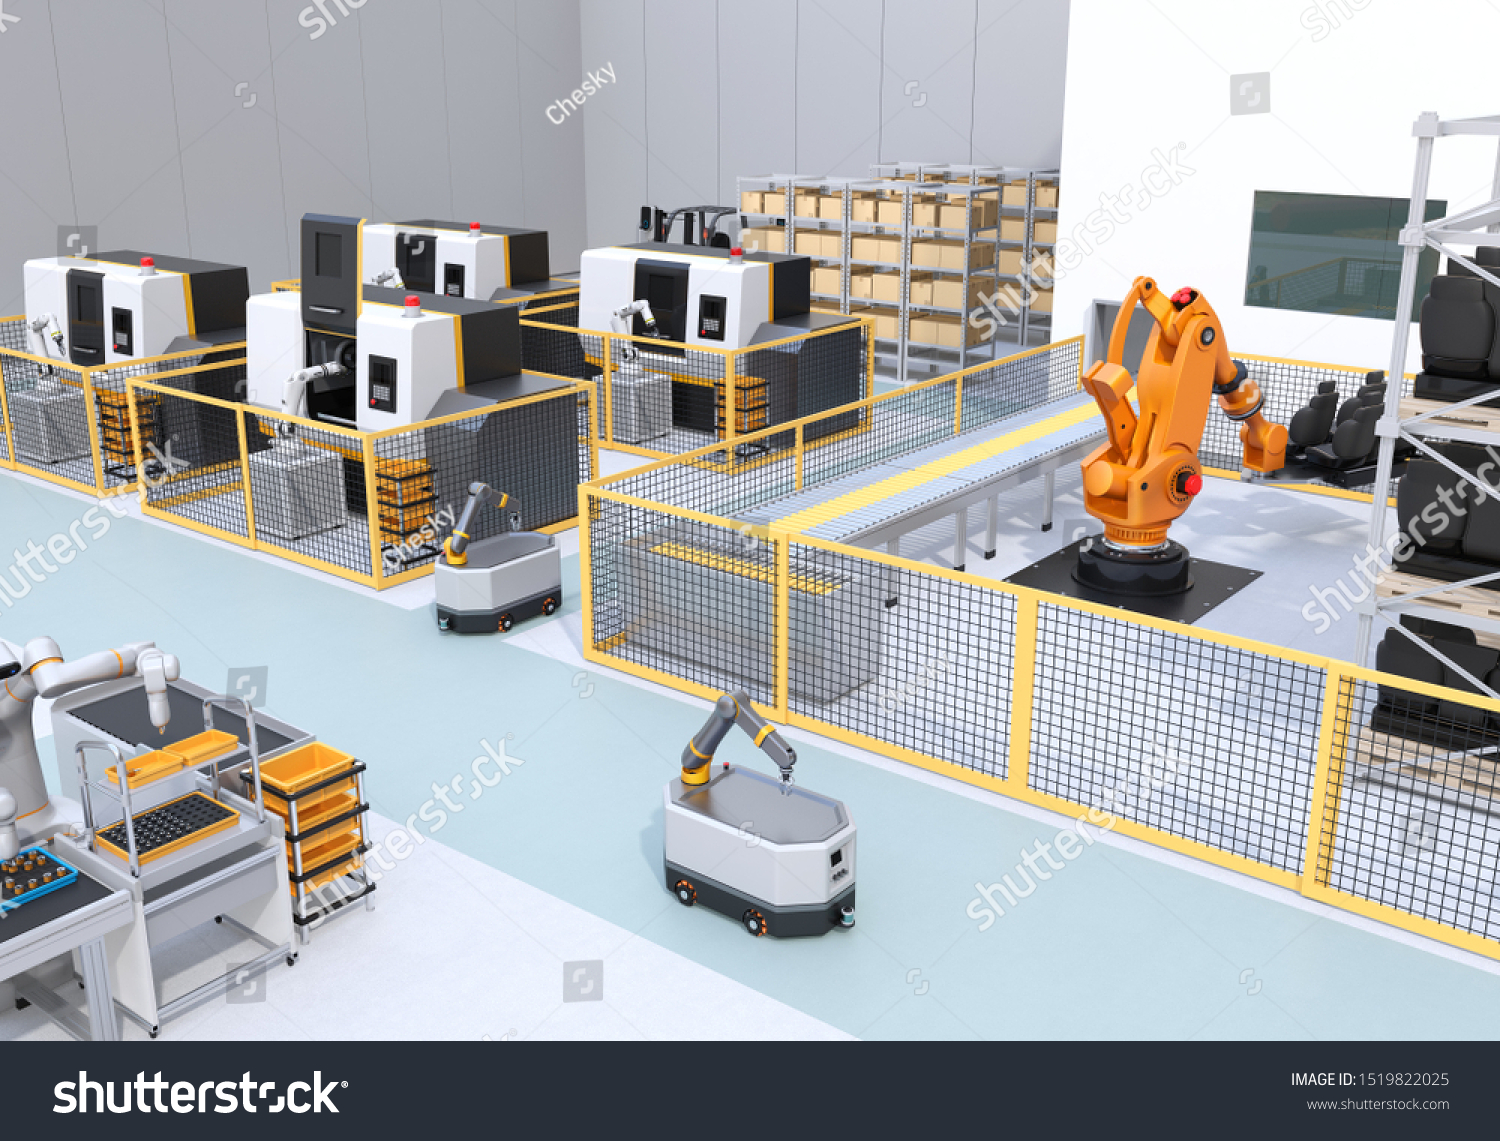 スマートな工場で 移動ロボット 双腕ロボット 重いペイロードロボットセル Cnc機械を搭載 3dレンダリングイメージ のイラスト素材